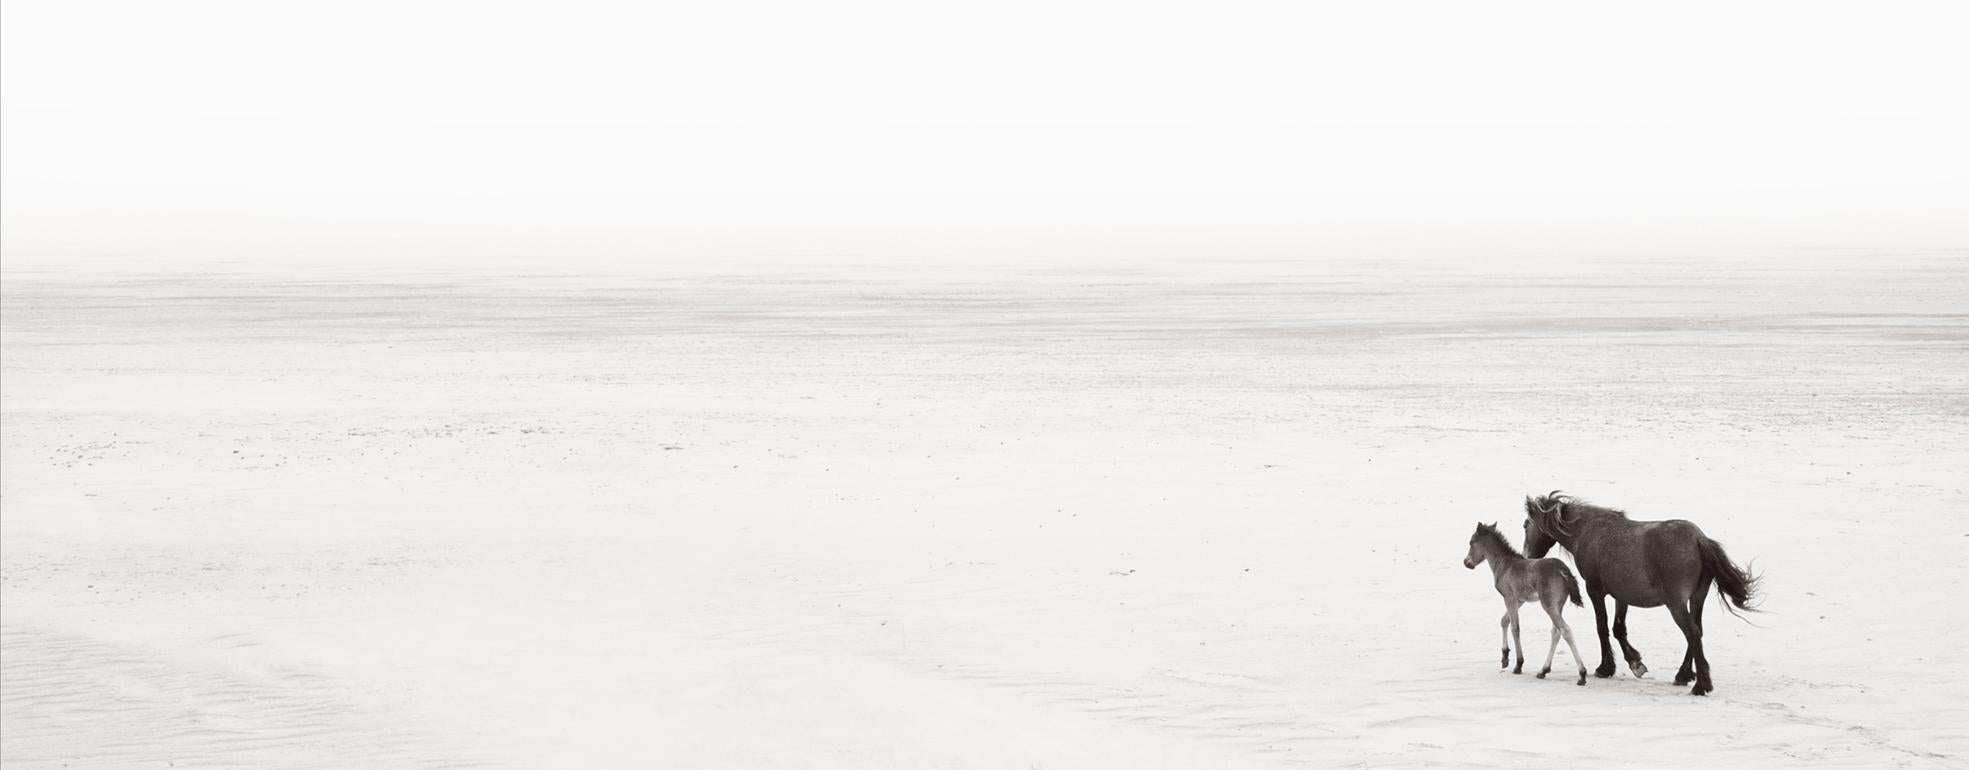 Drew Doggett Black and White Photograph – Zwei Wildpferde am Strand, Kalbsleder, Reiter